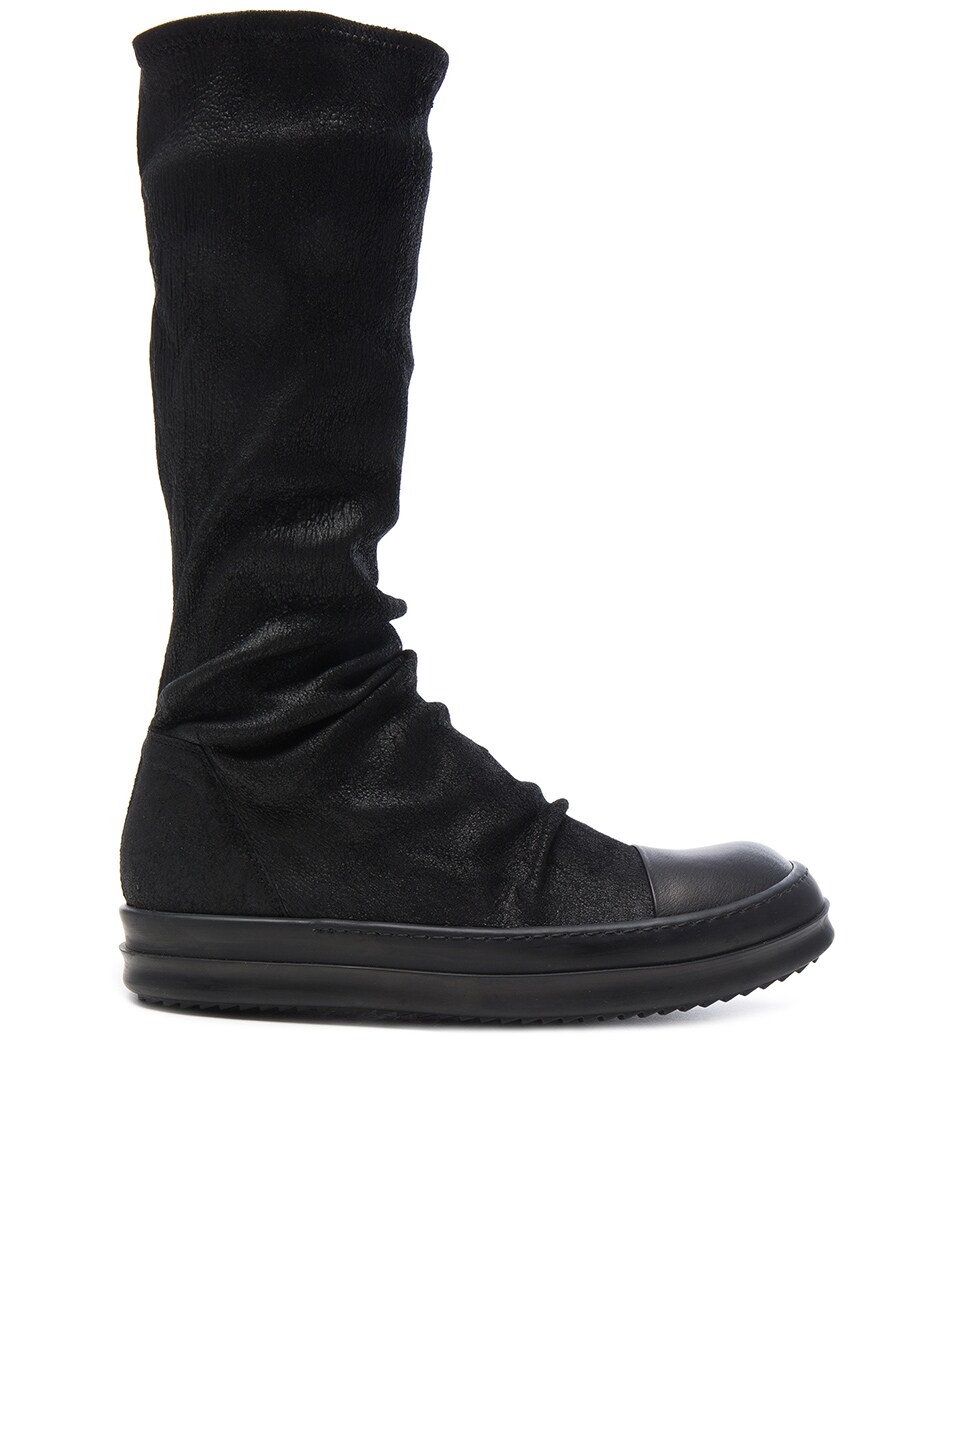 Image 1 of Rick Owens Leather Sock Sneaks in Black